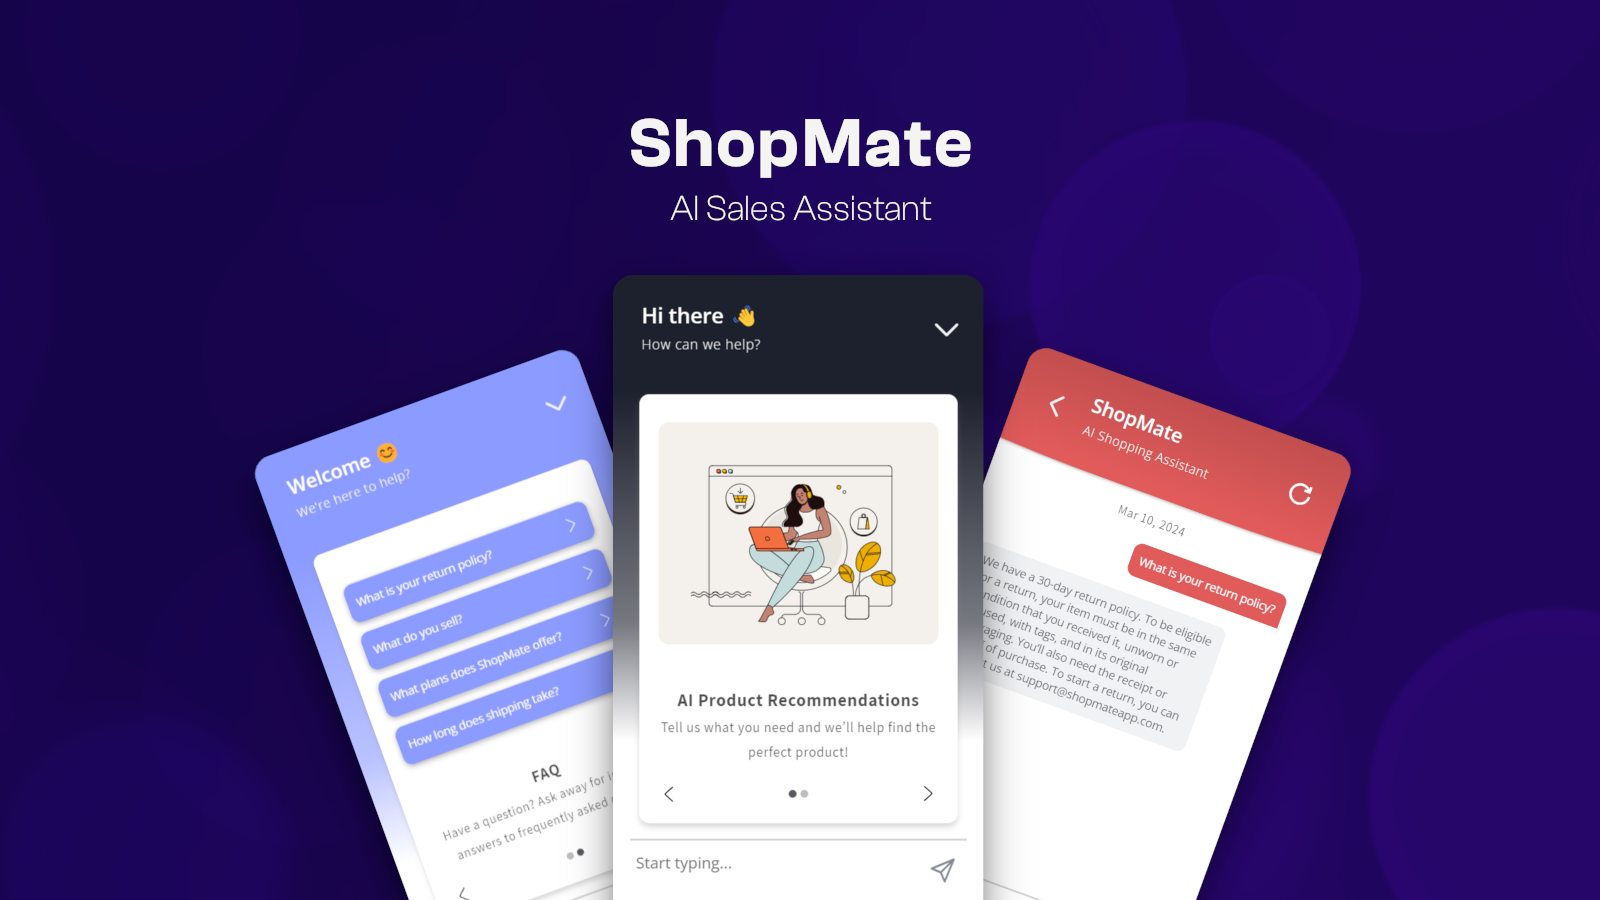 Función de la aplicación - Asistente de ventas ShopMate IA